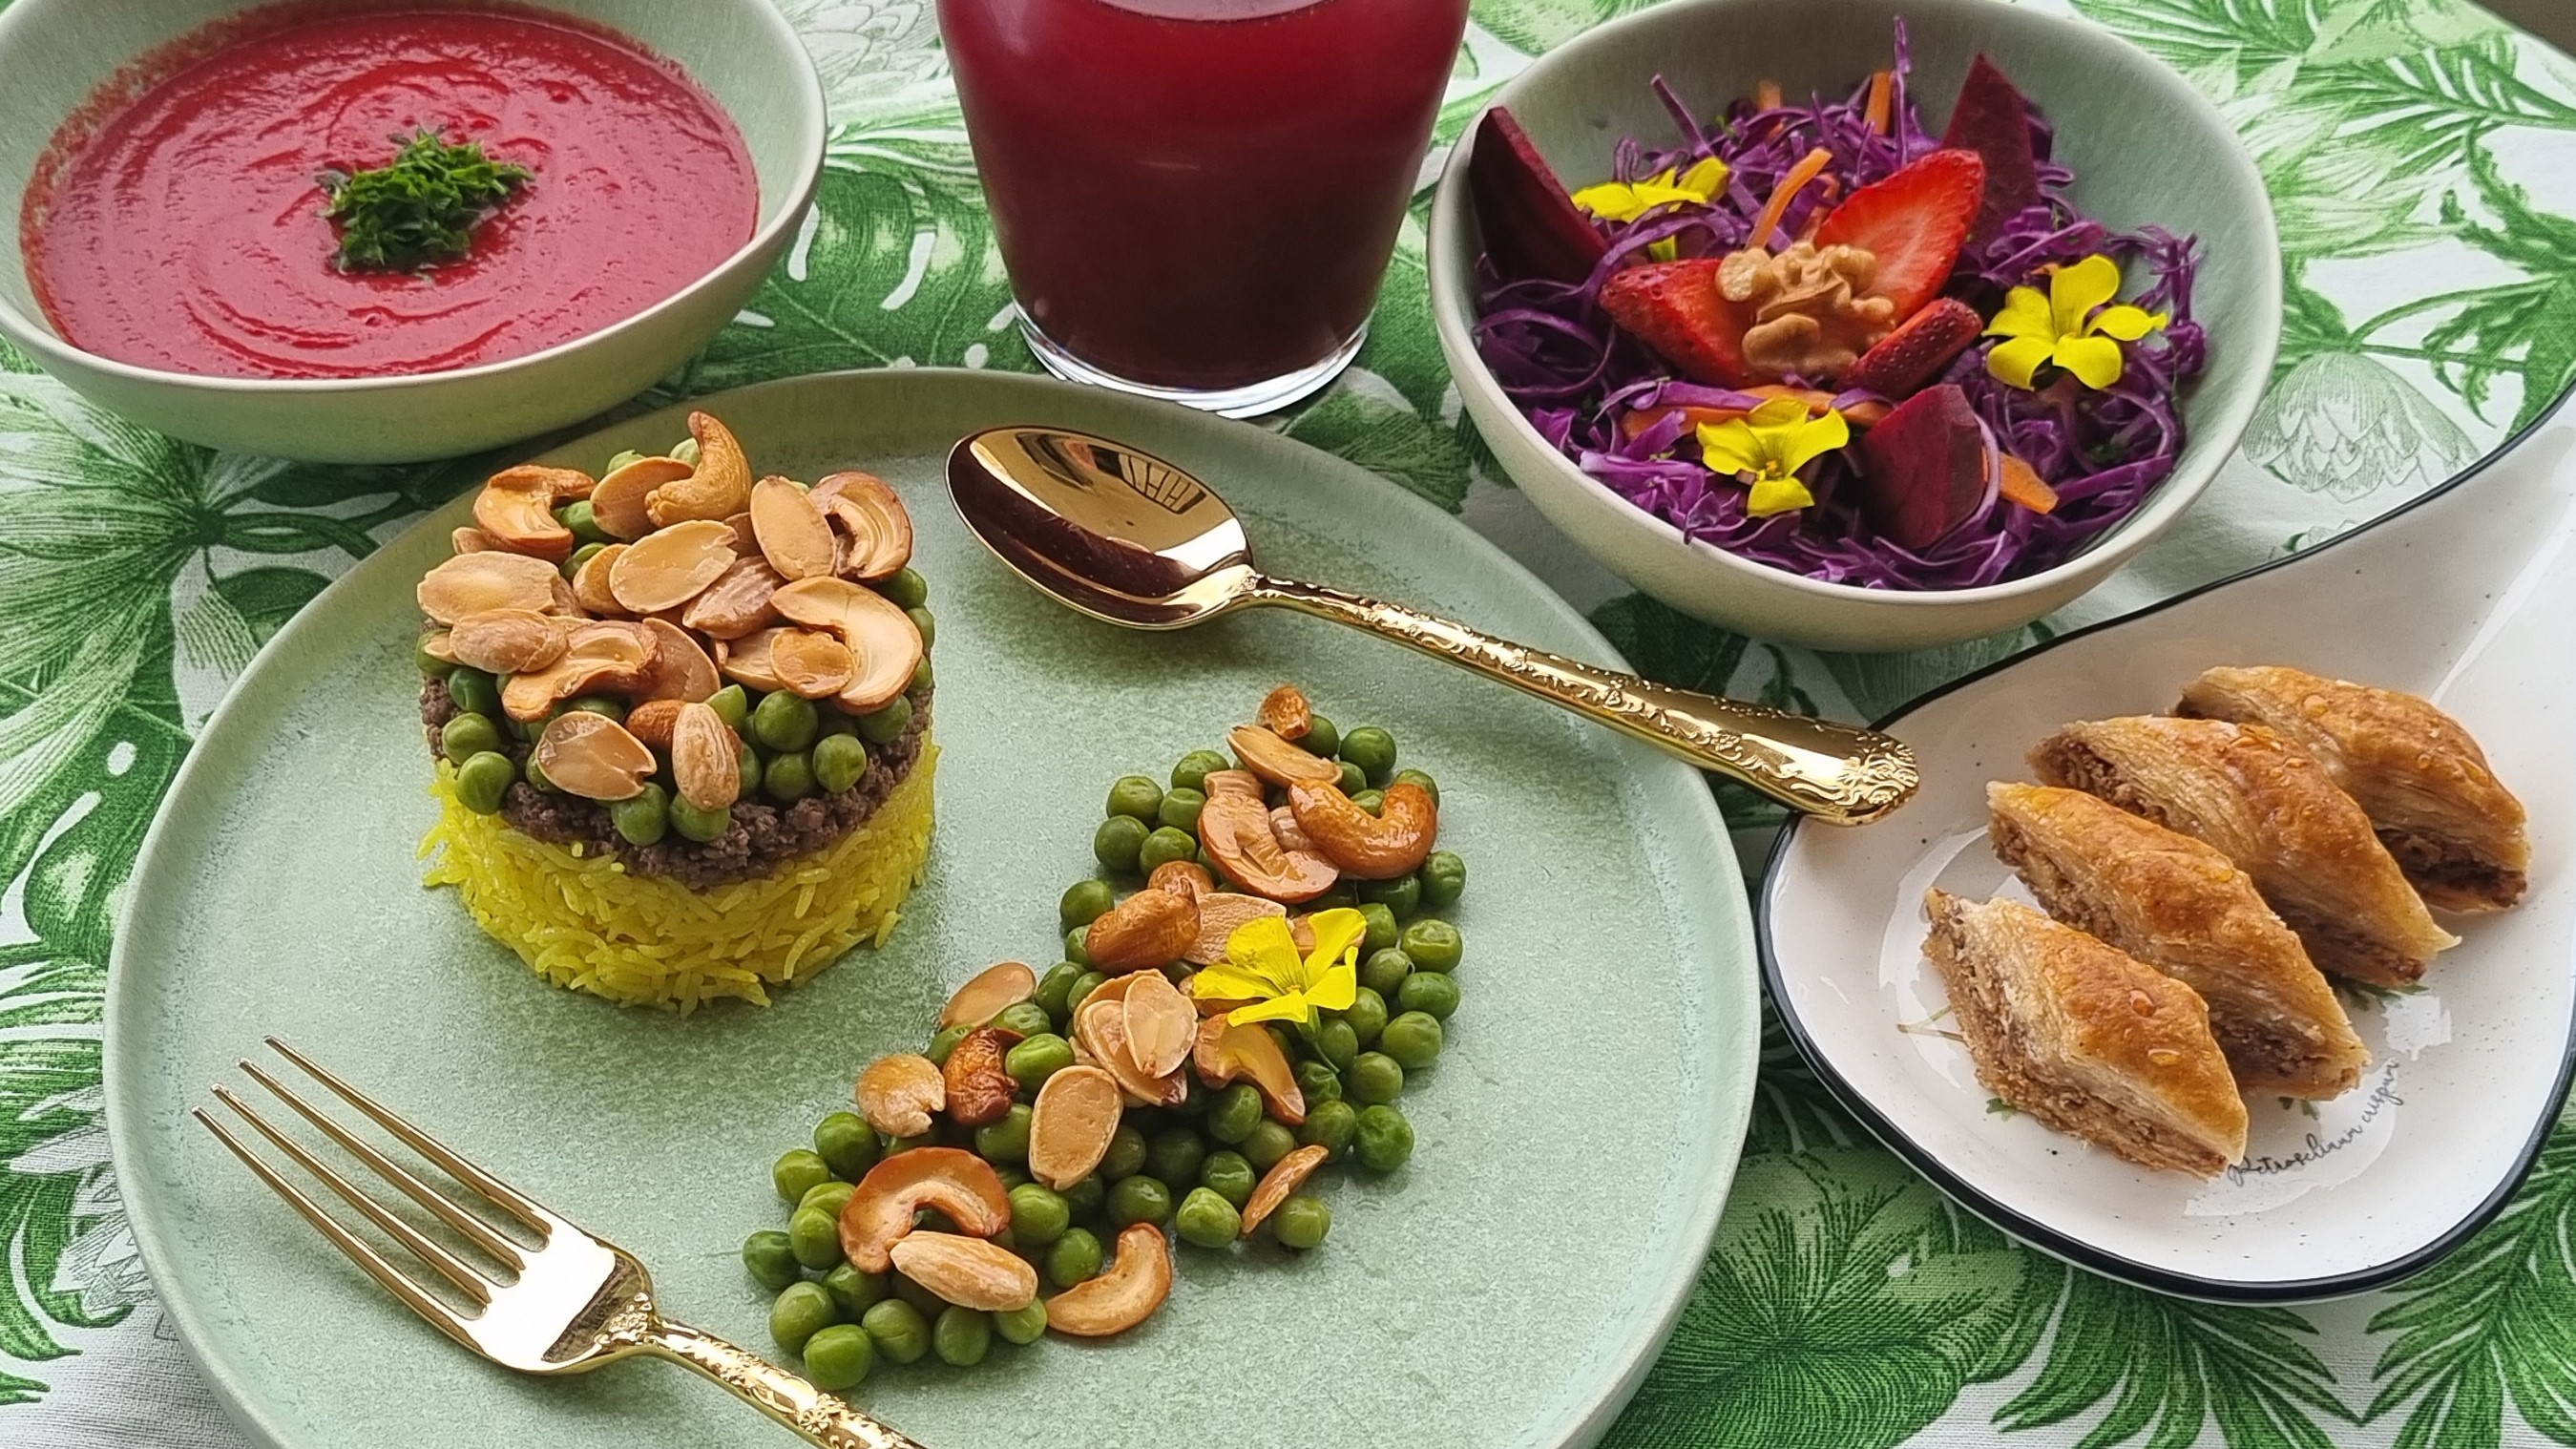 الأرز الصفربالبازيلاء الخضراء وحساء الشمندر والسلطة الحمراء وحدف رمضان